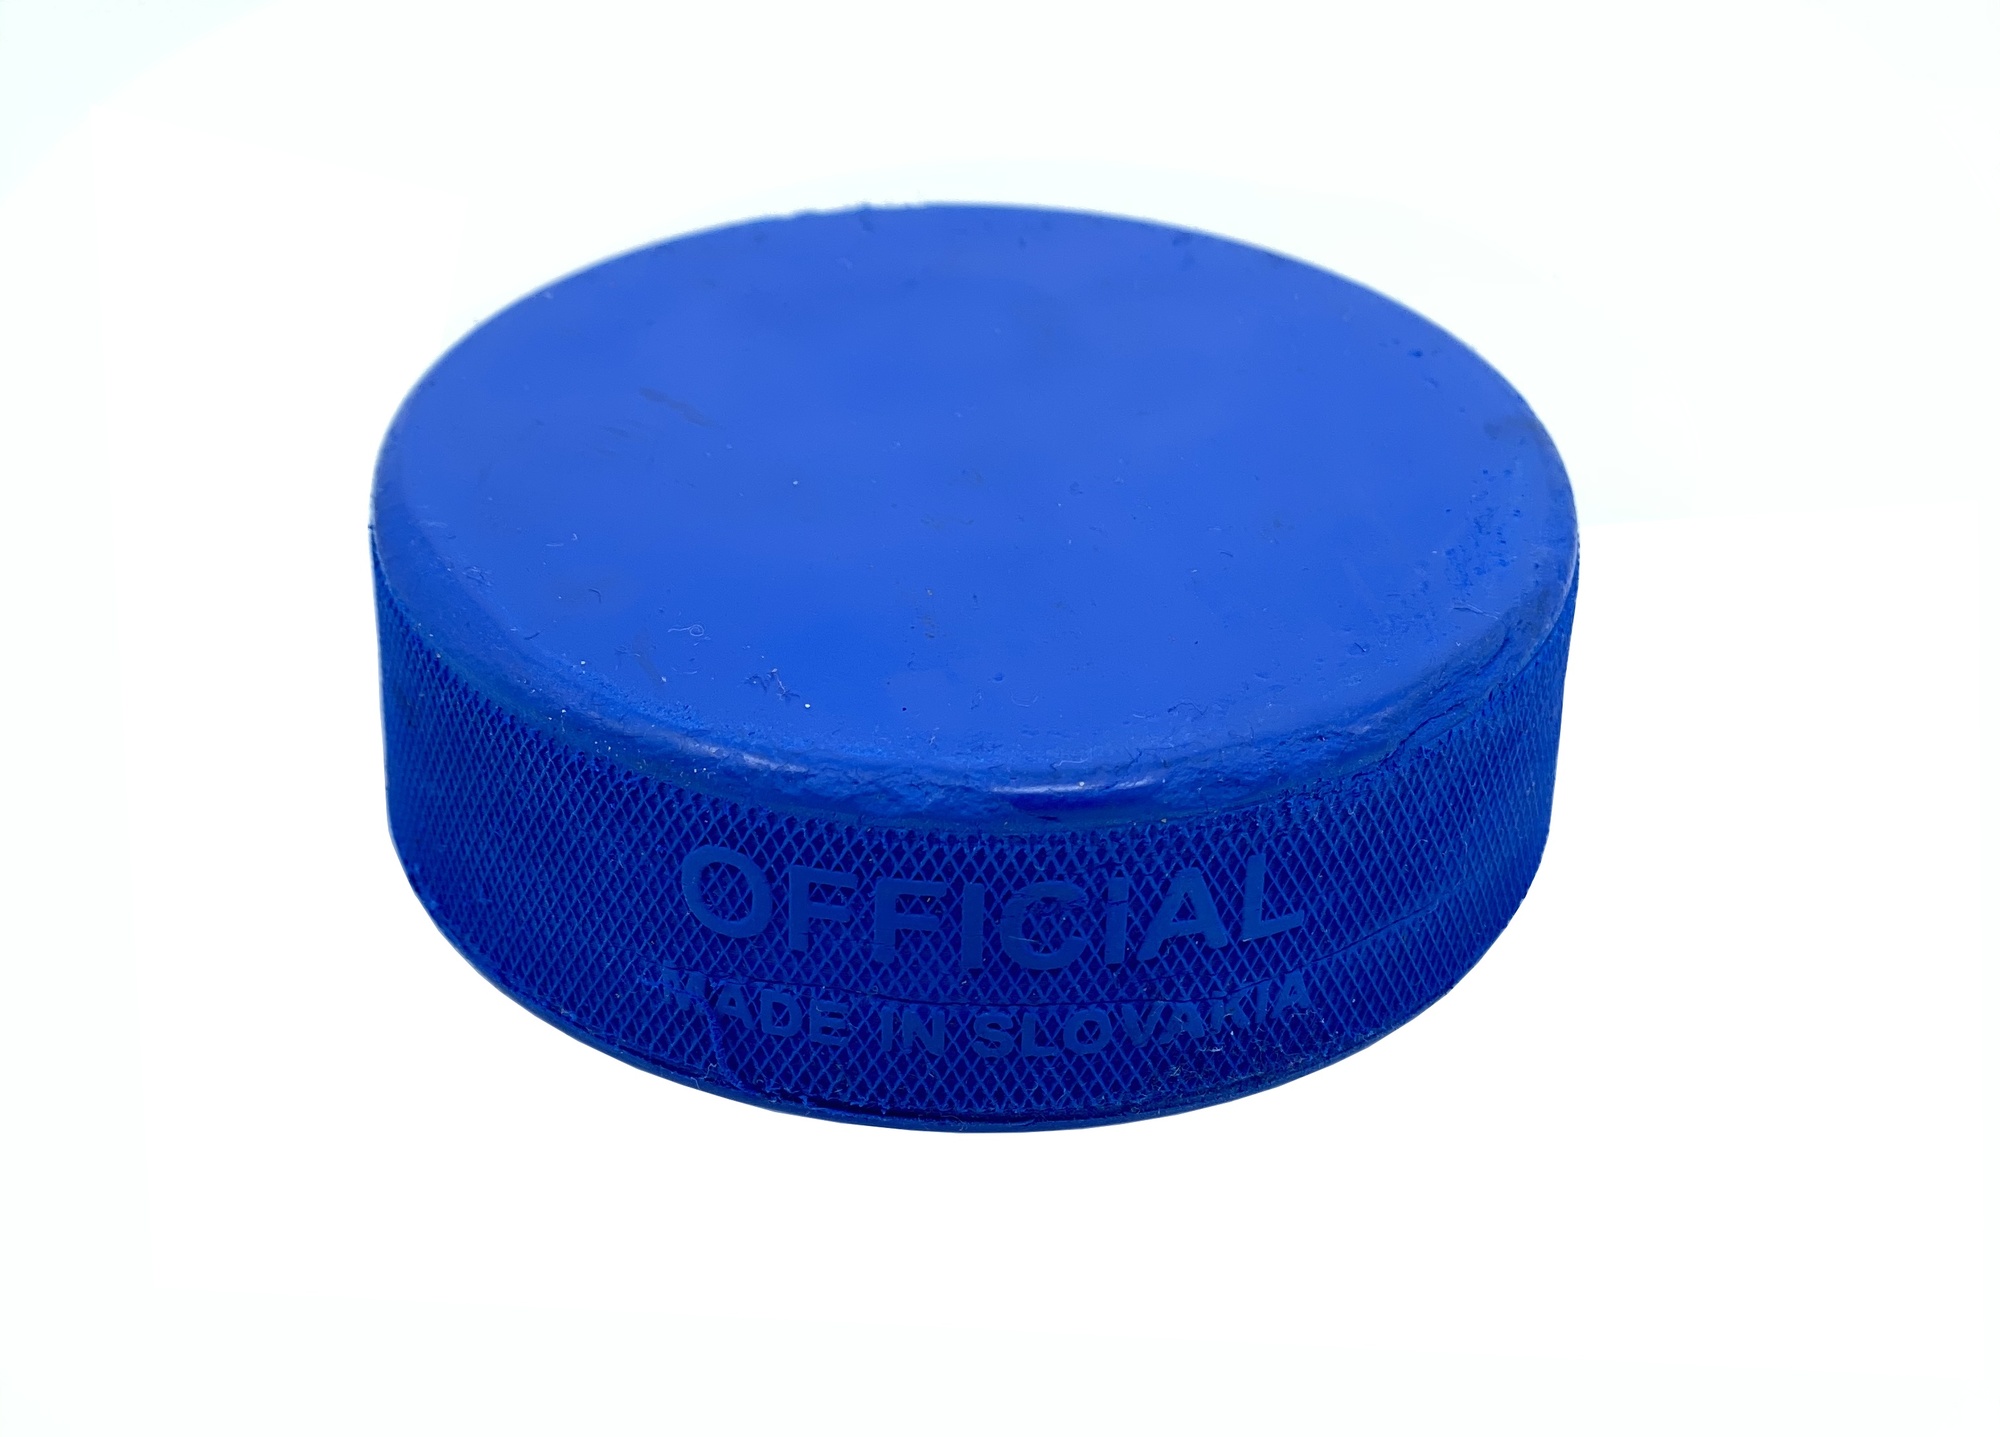 Hokejový puk InGlasCo modrý JR odlehčený tréninkový